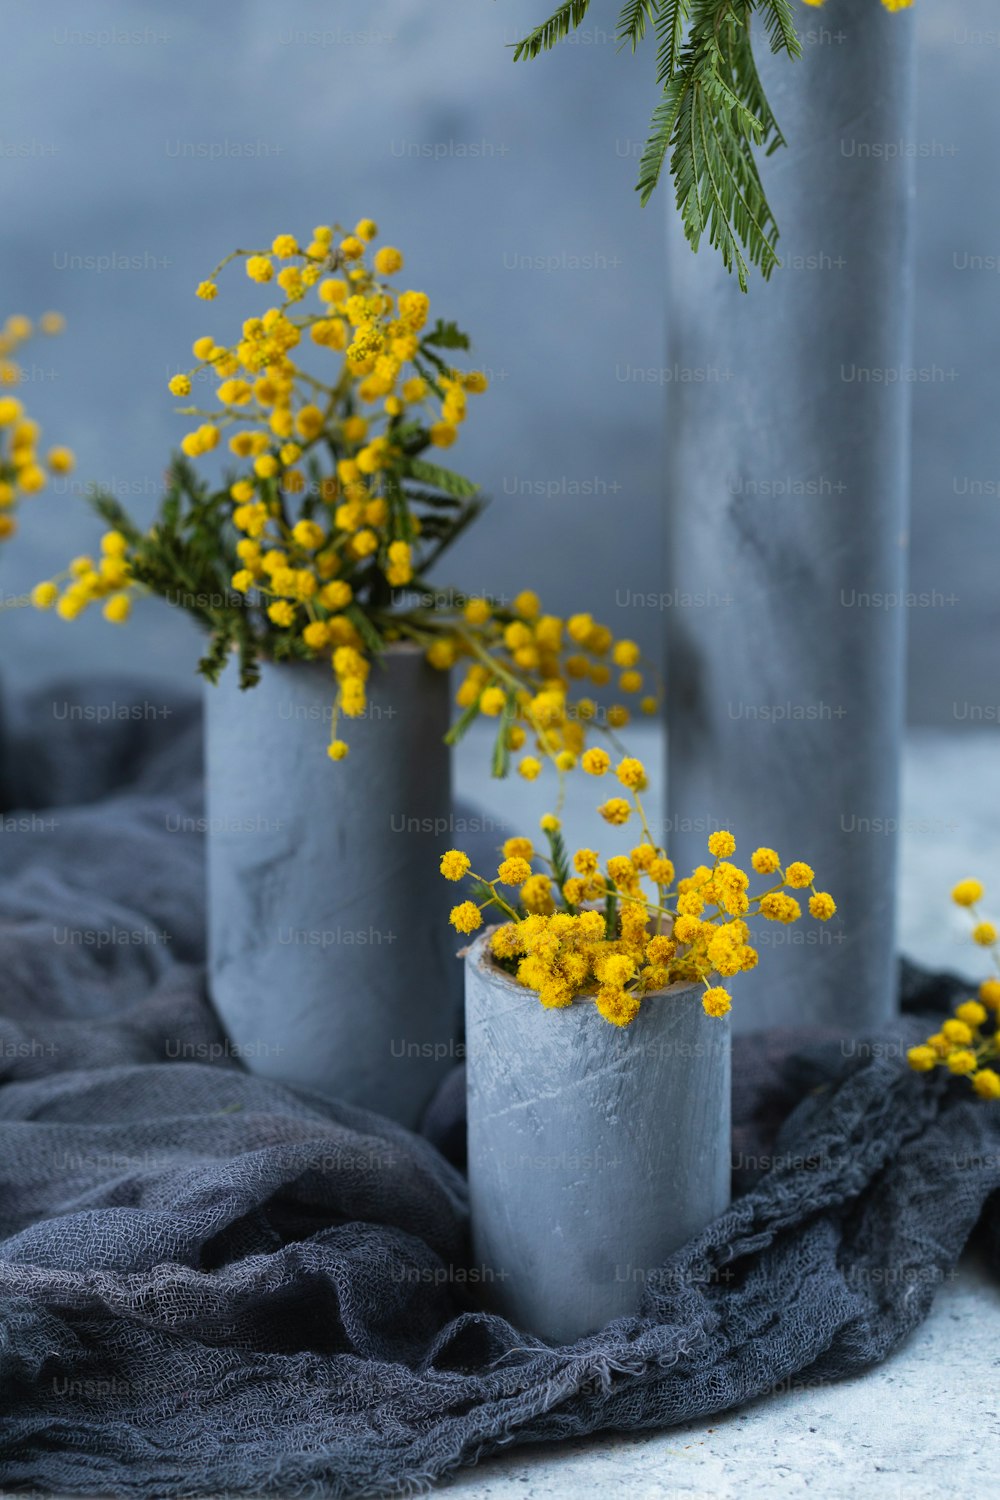 tre vasi di cemento con fiori gialli in essi